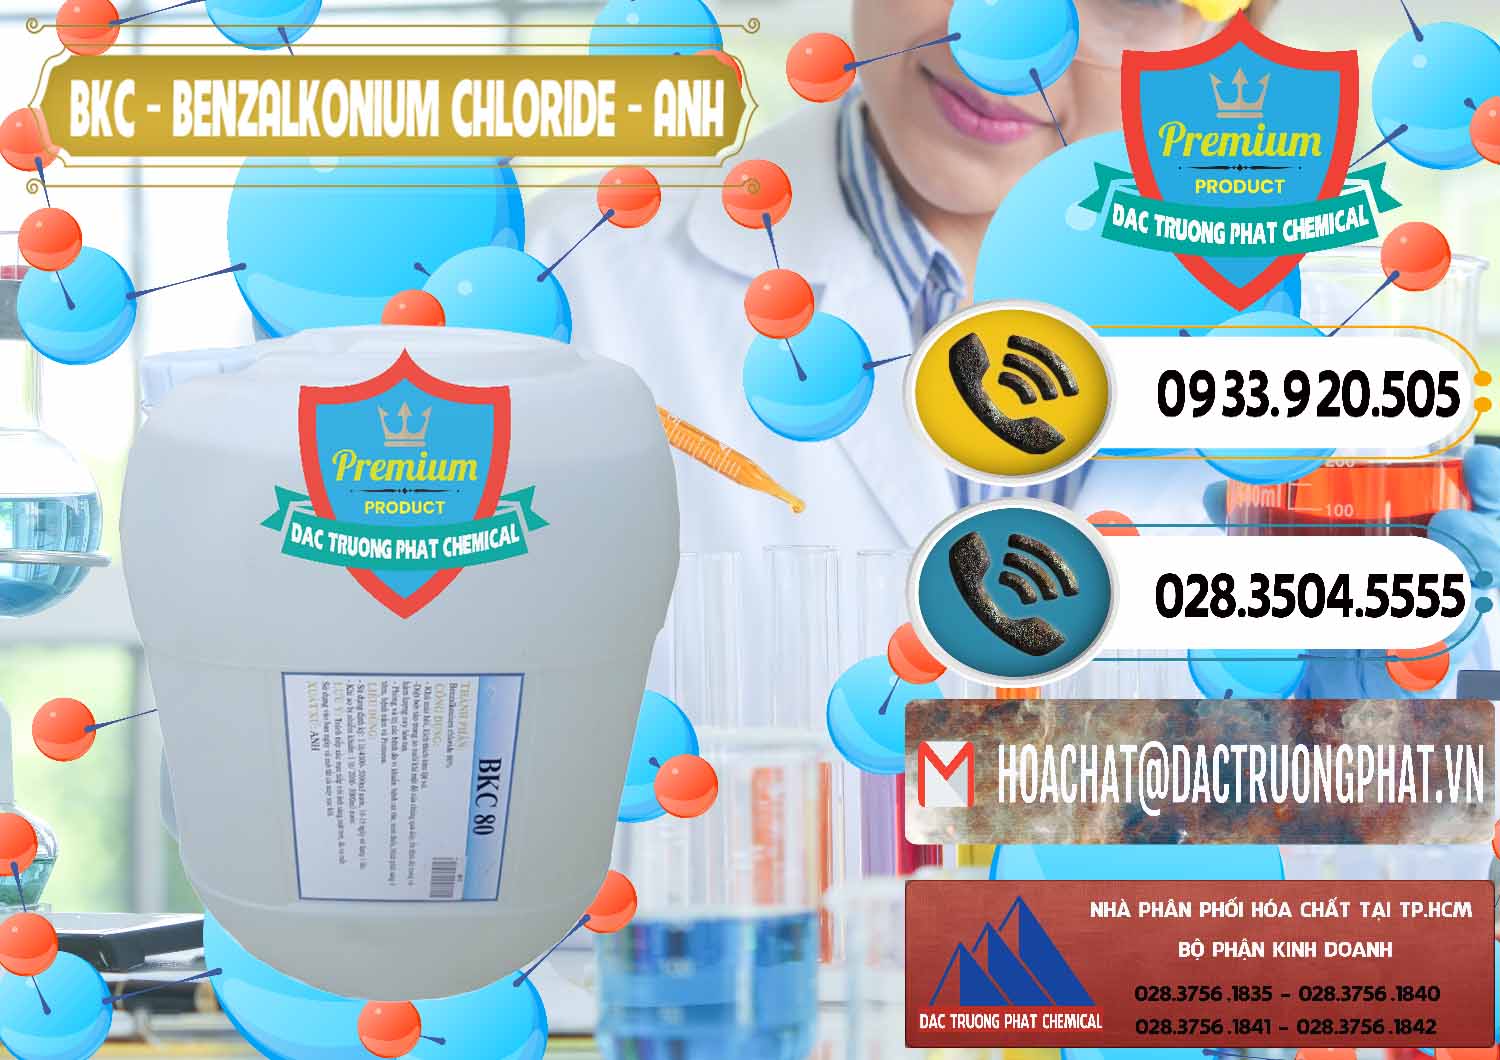 Nhà nhập khẩu _ bán BKC - Benzalkonium Chloride Anh Quốc Uk Kingdoms - 0415 - Cty chuyên cung ứng ( phân phối ) hóa chất tại TP.HCM - hoachatdetnhuom.vn